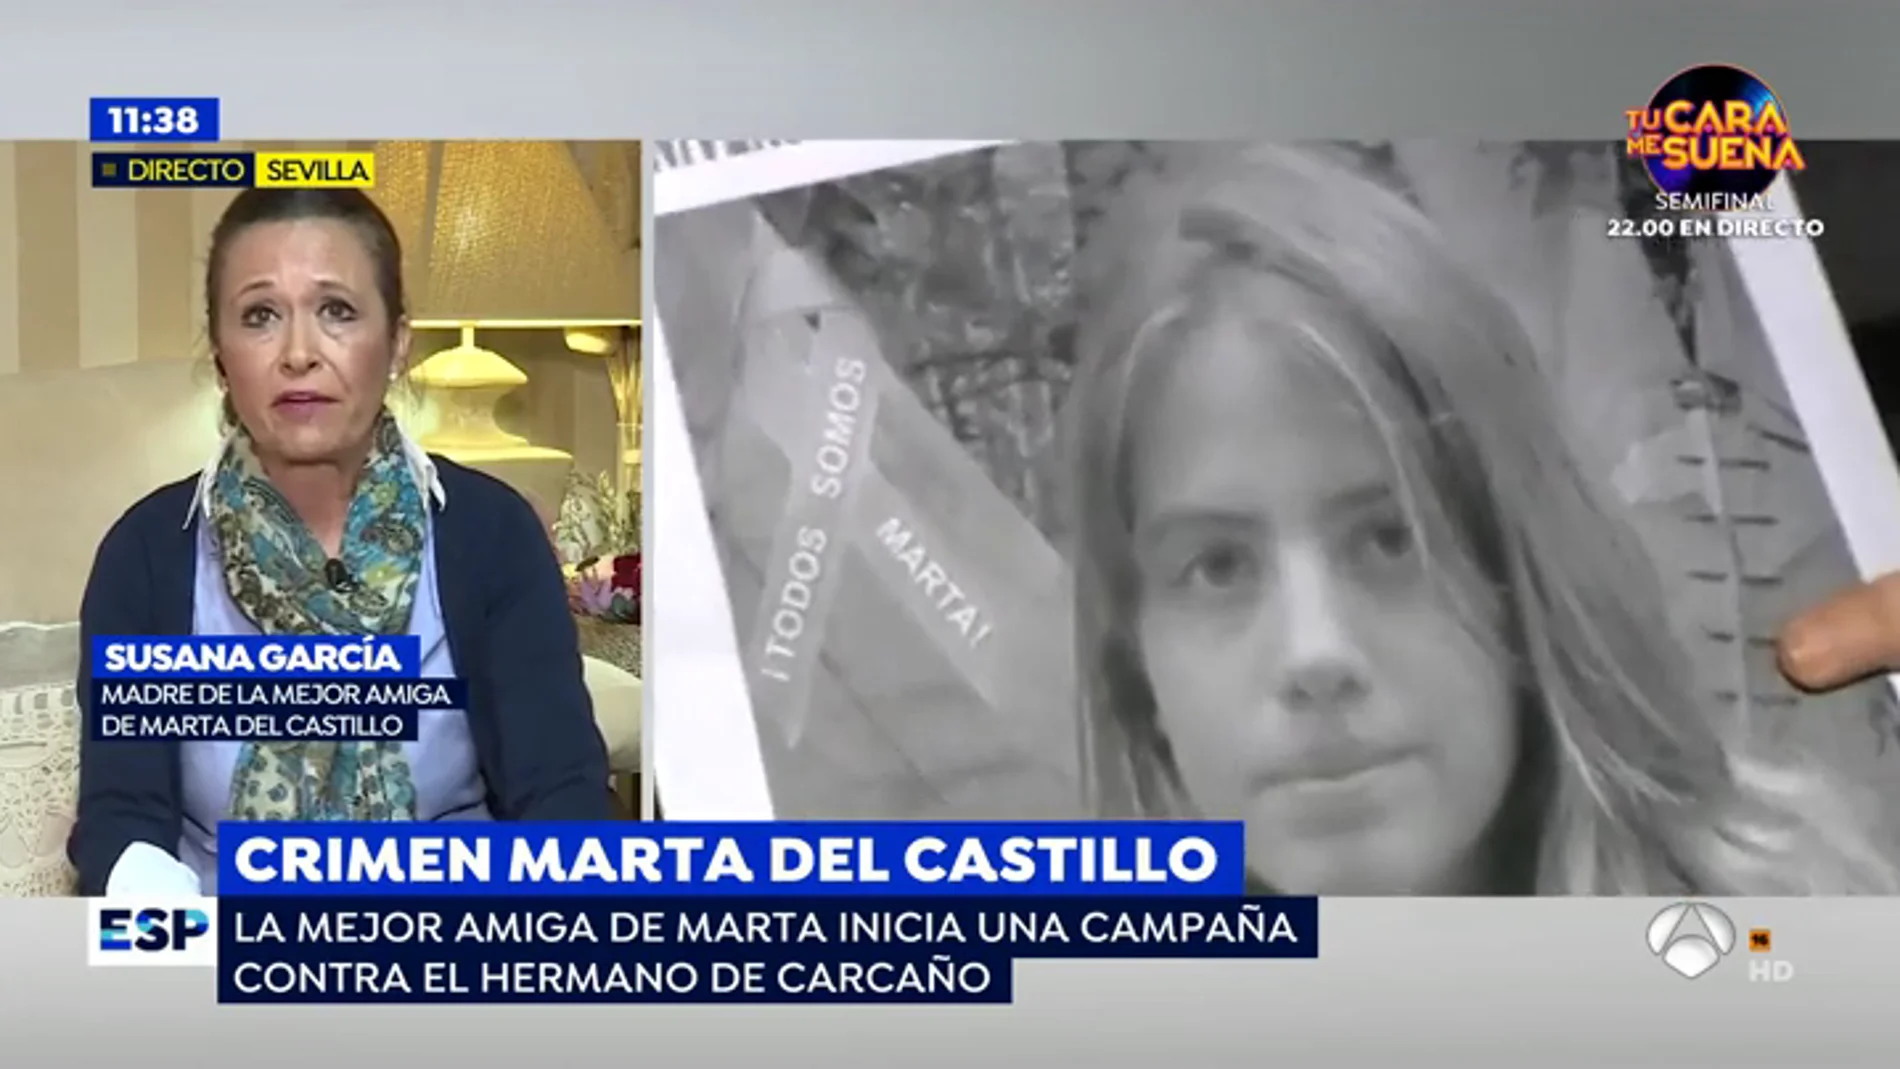 La campaña viral que ha lanzado la mejor amiga de Marta del Castillo contra el anonimato de Francisco Javier Delgado